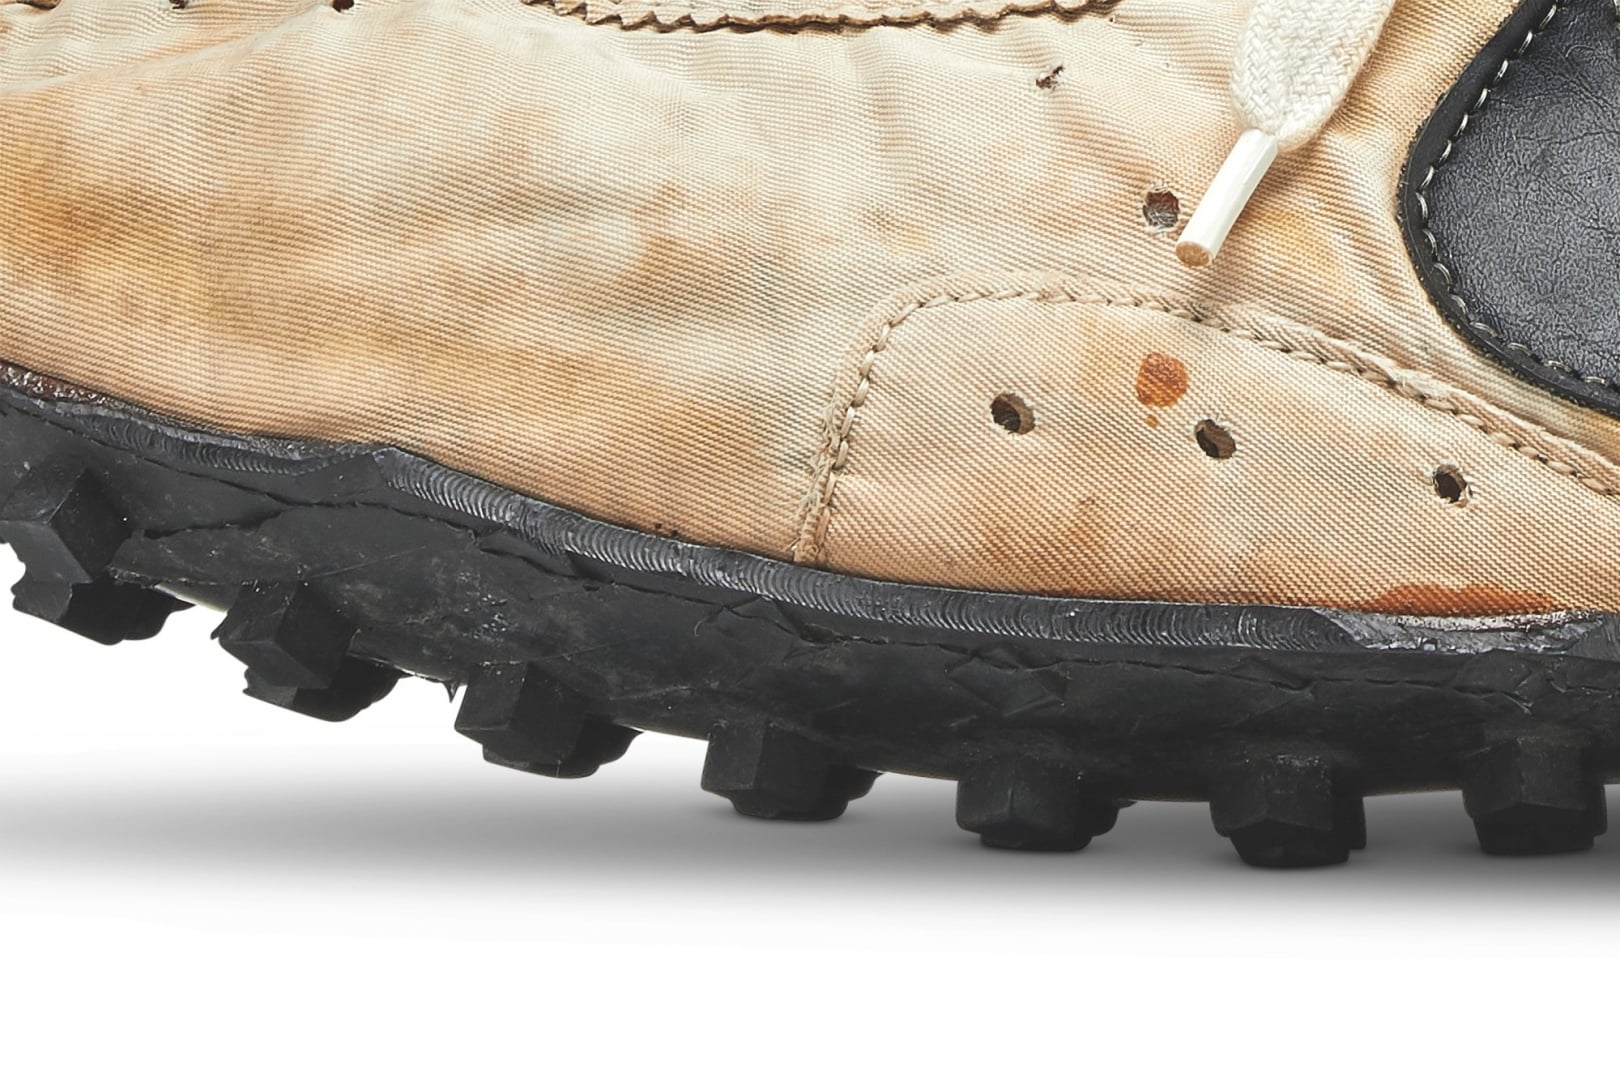 # 不只是蘇富比最貴球鞋： Nike Moon Shoe 還承載了田徑教練的崢嶸歲月 17